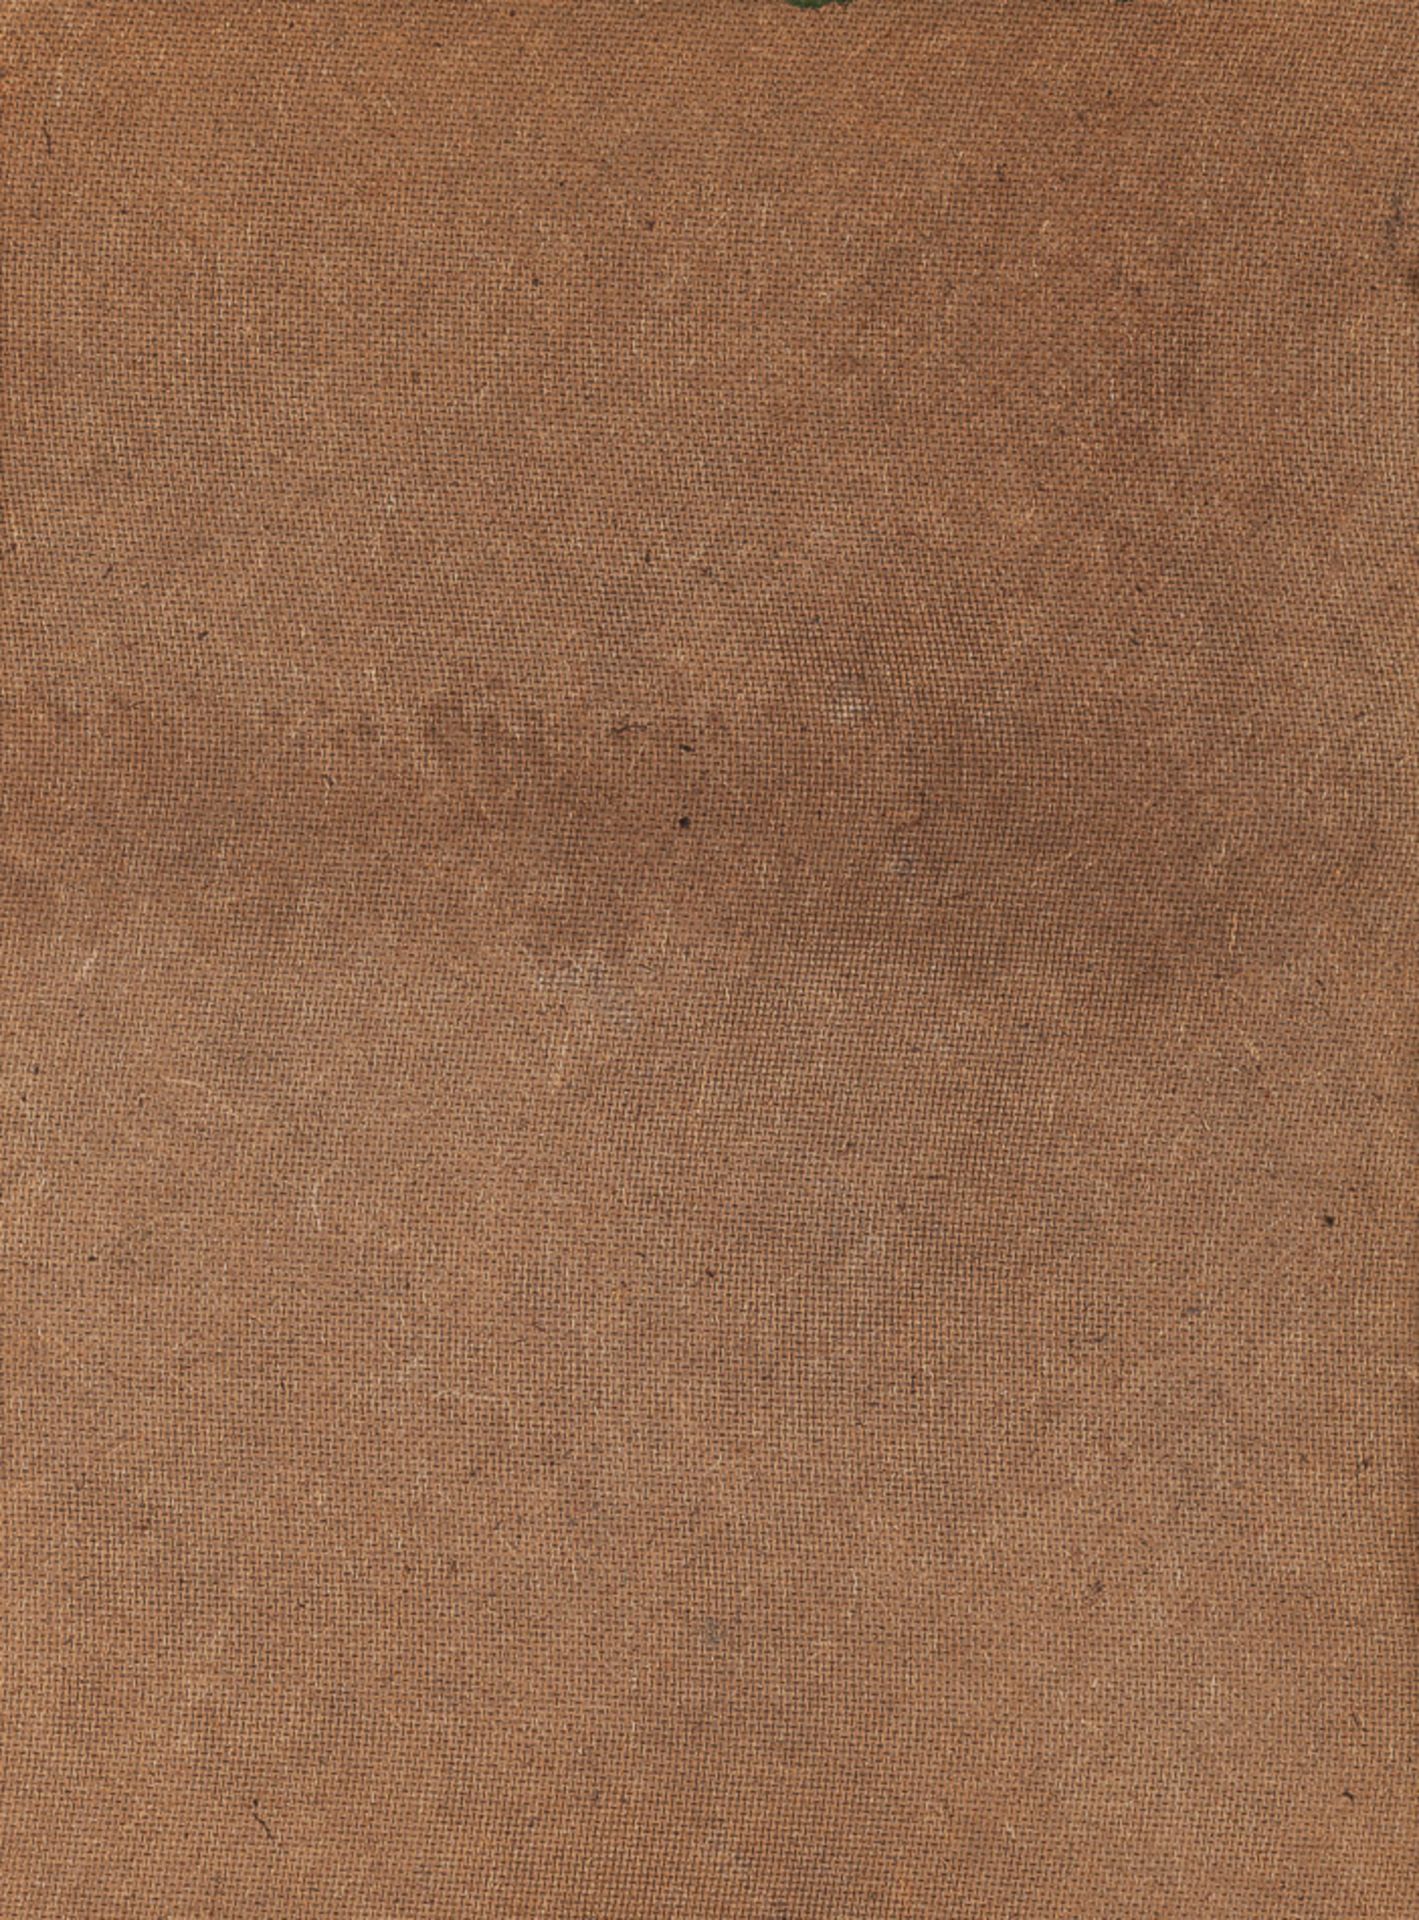 Herman  Bolt 20. Jhd."abstrakter Kopf"
Gemälde Öl/Hartfaser, 39 cm x 29 cm,
rechts unten signiert, - Image 3 of 3